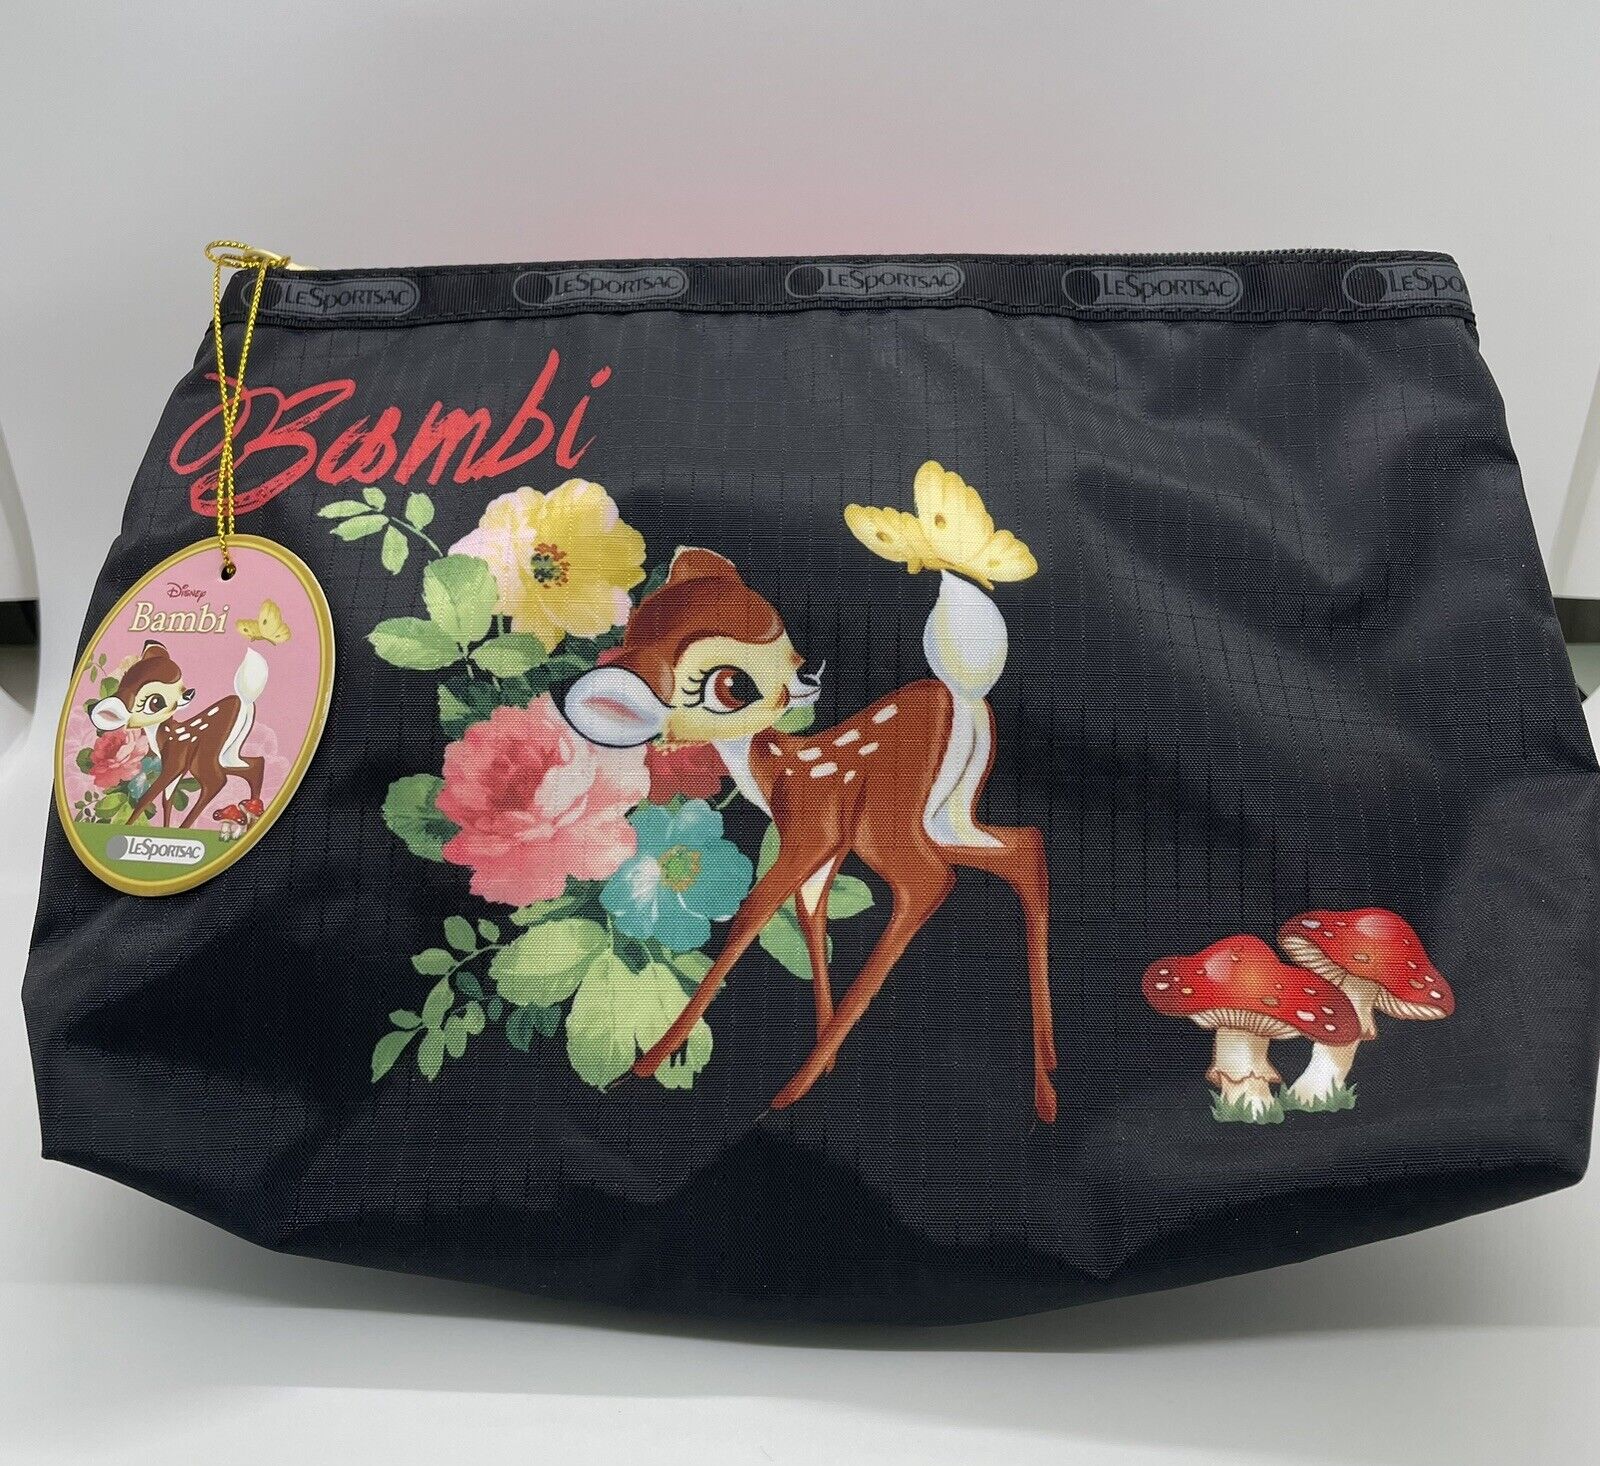 NEW LeSportsac Vintage Disney Bambi Pouch Bag Purse Wristlet MakeUp Travel Black